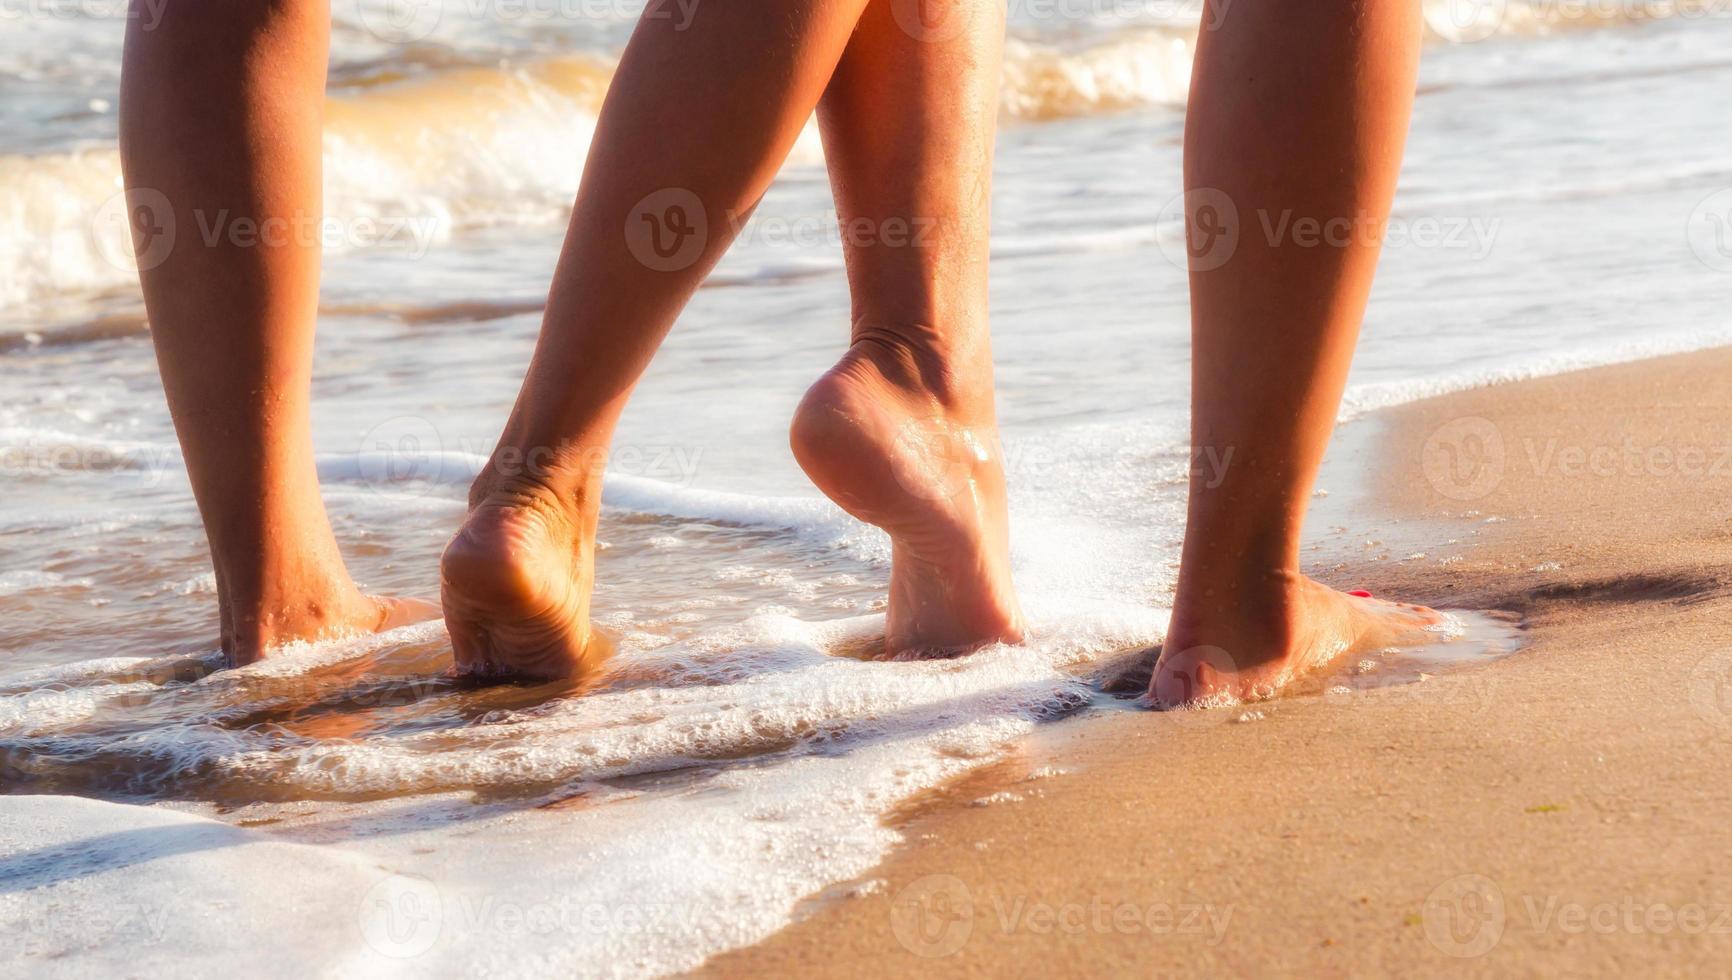 due persone che camminano a piedi nudi sulla sabbia foto